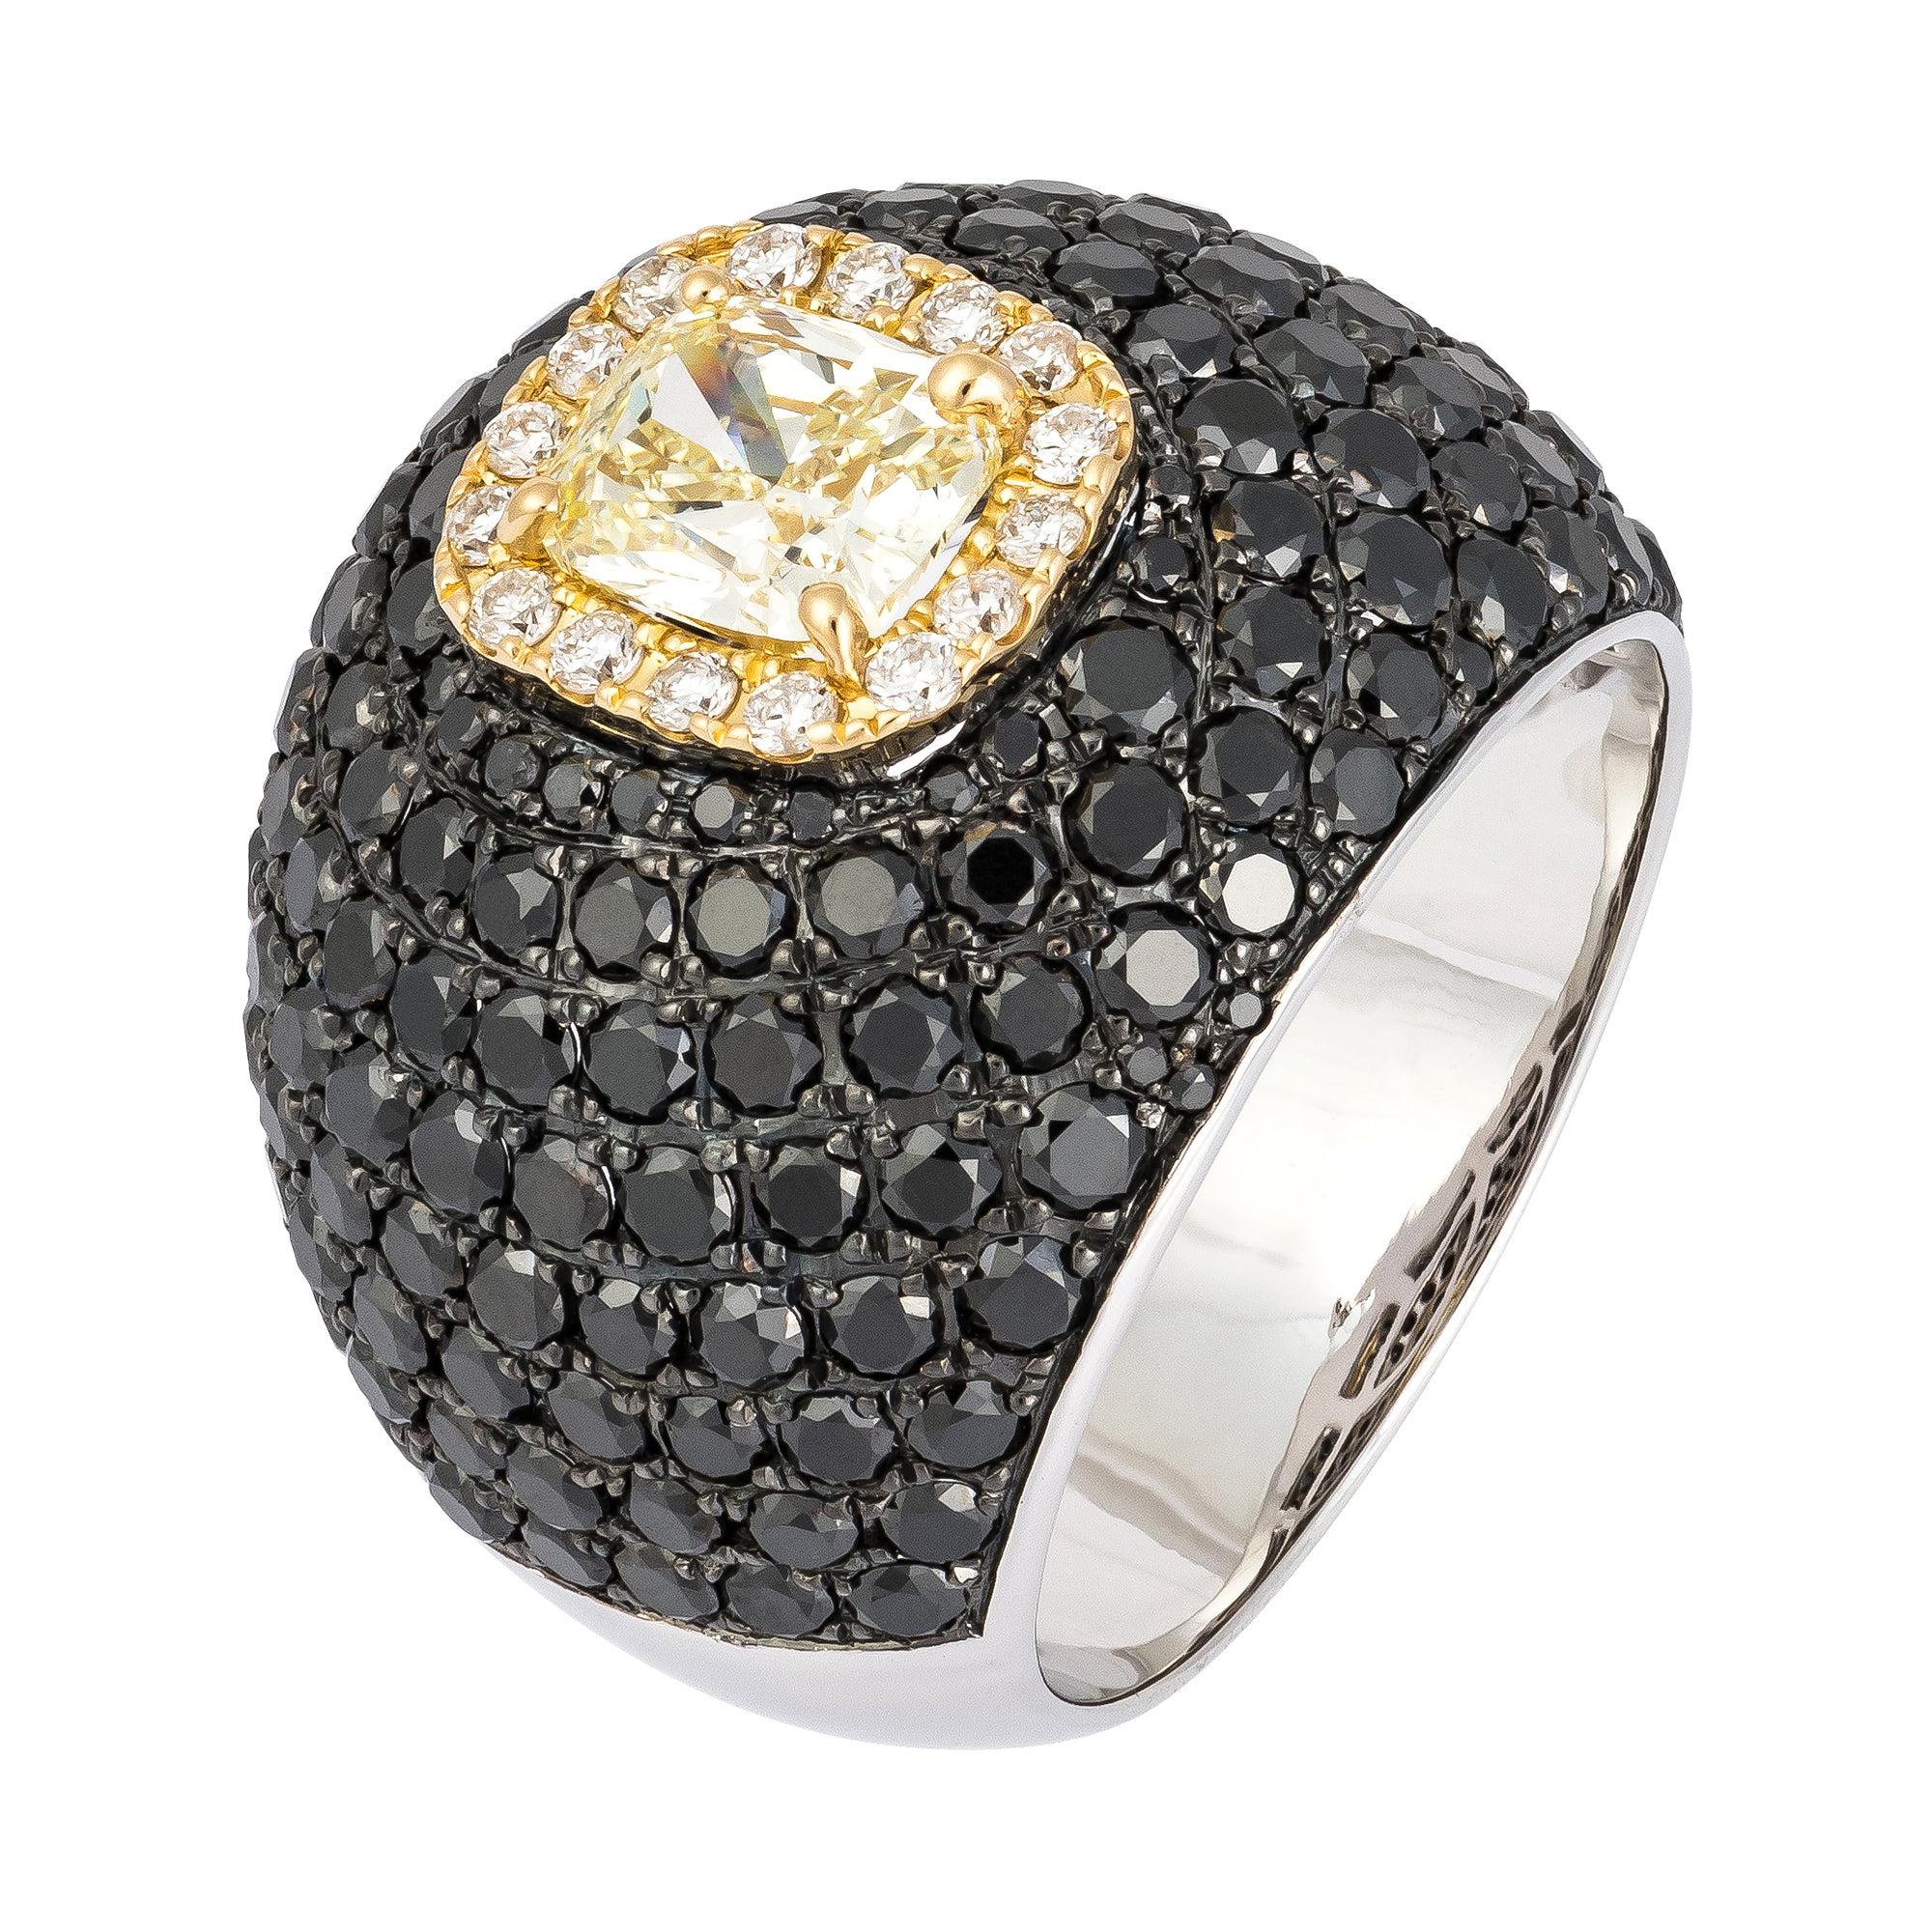 Italian Rare Black Yellow Diamond White Gold 18K Ring for Her For Sale